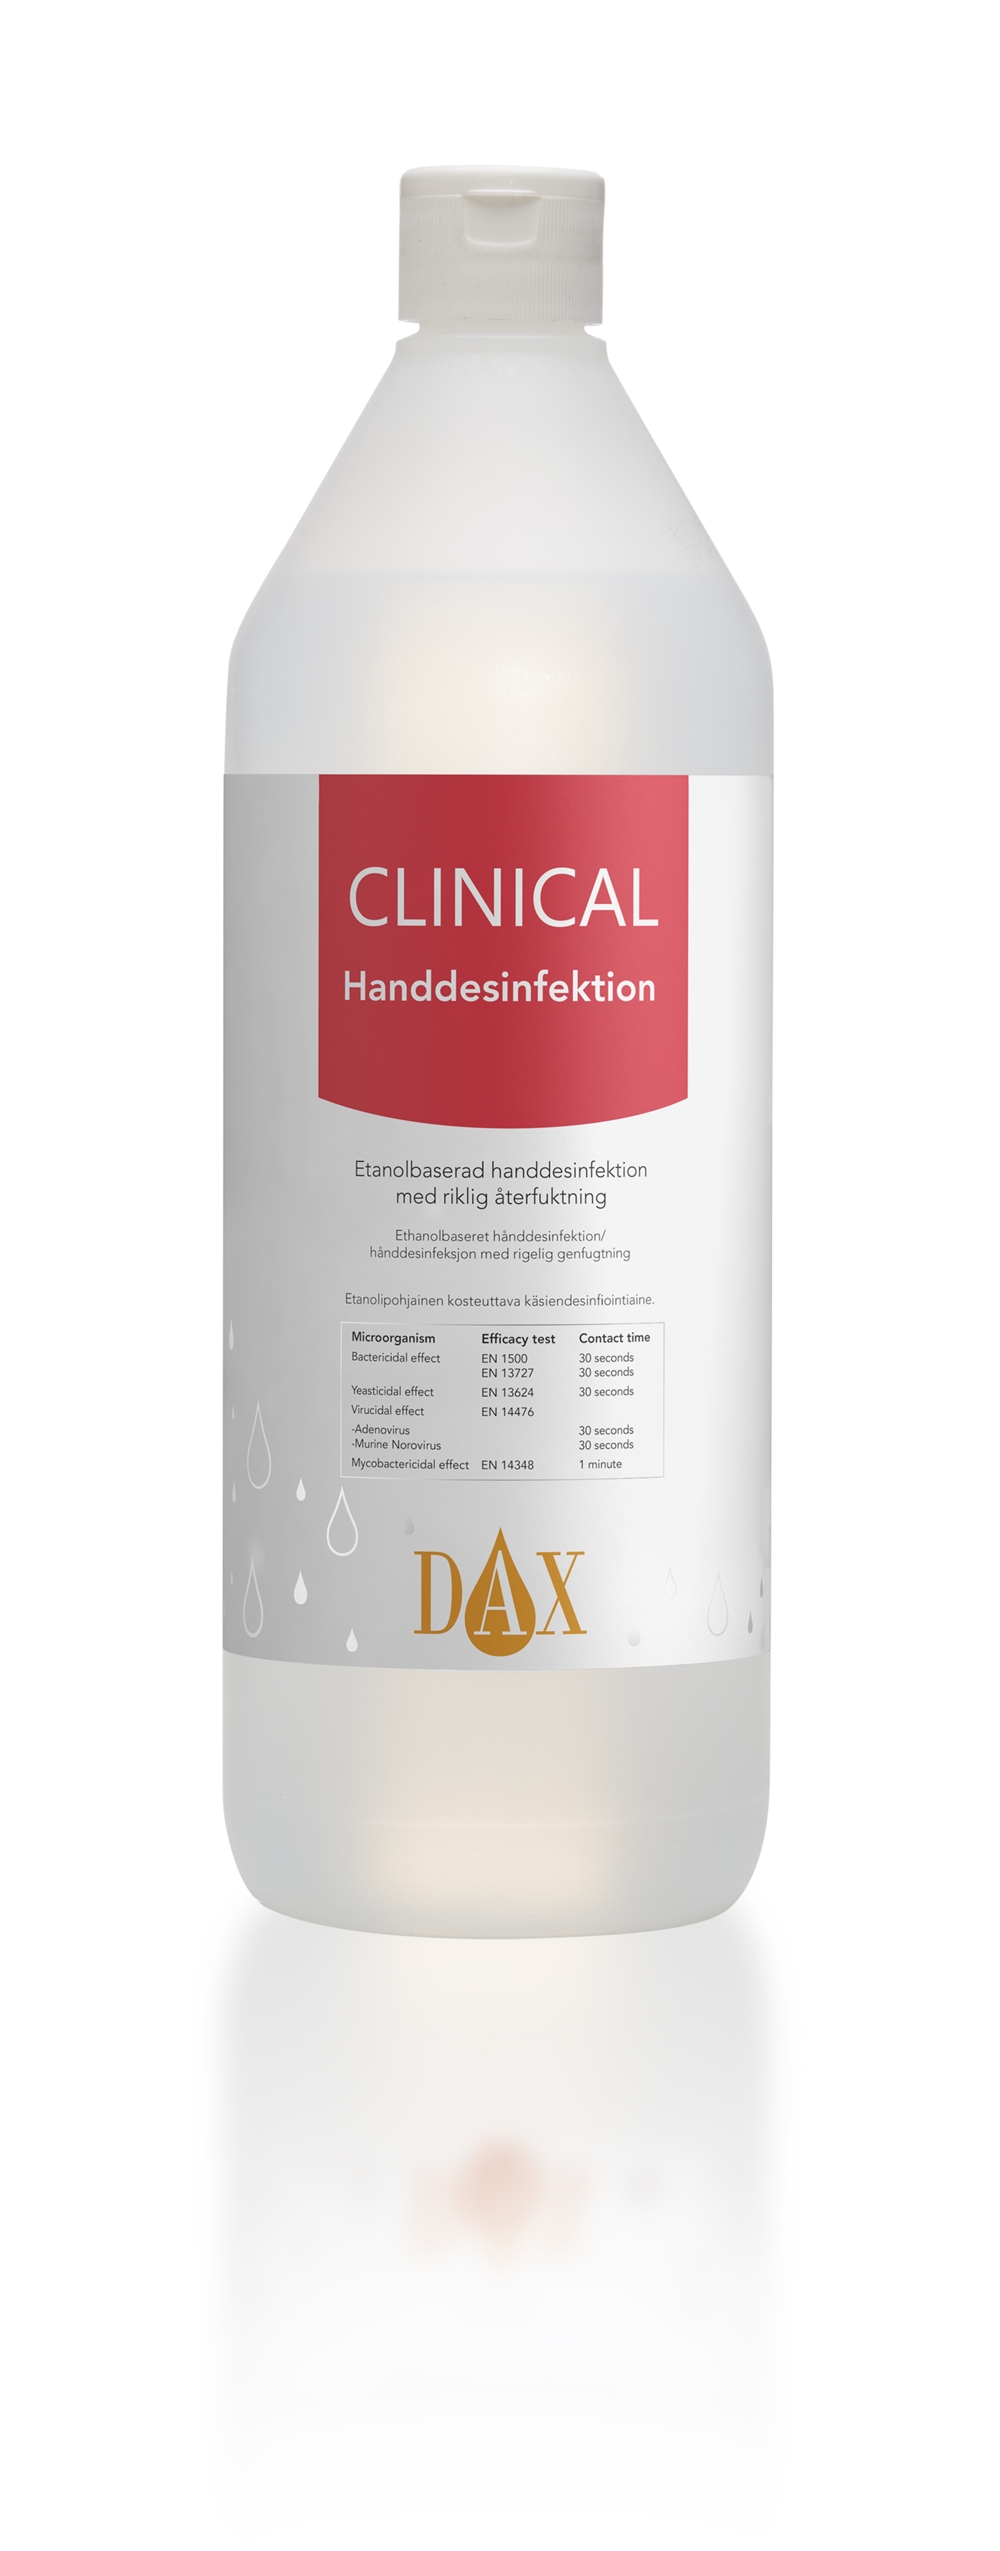 Handdesinfektion Dax Clinical 75% - 1000ml flaska